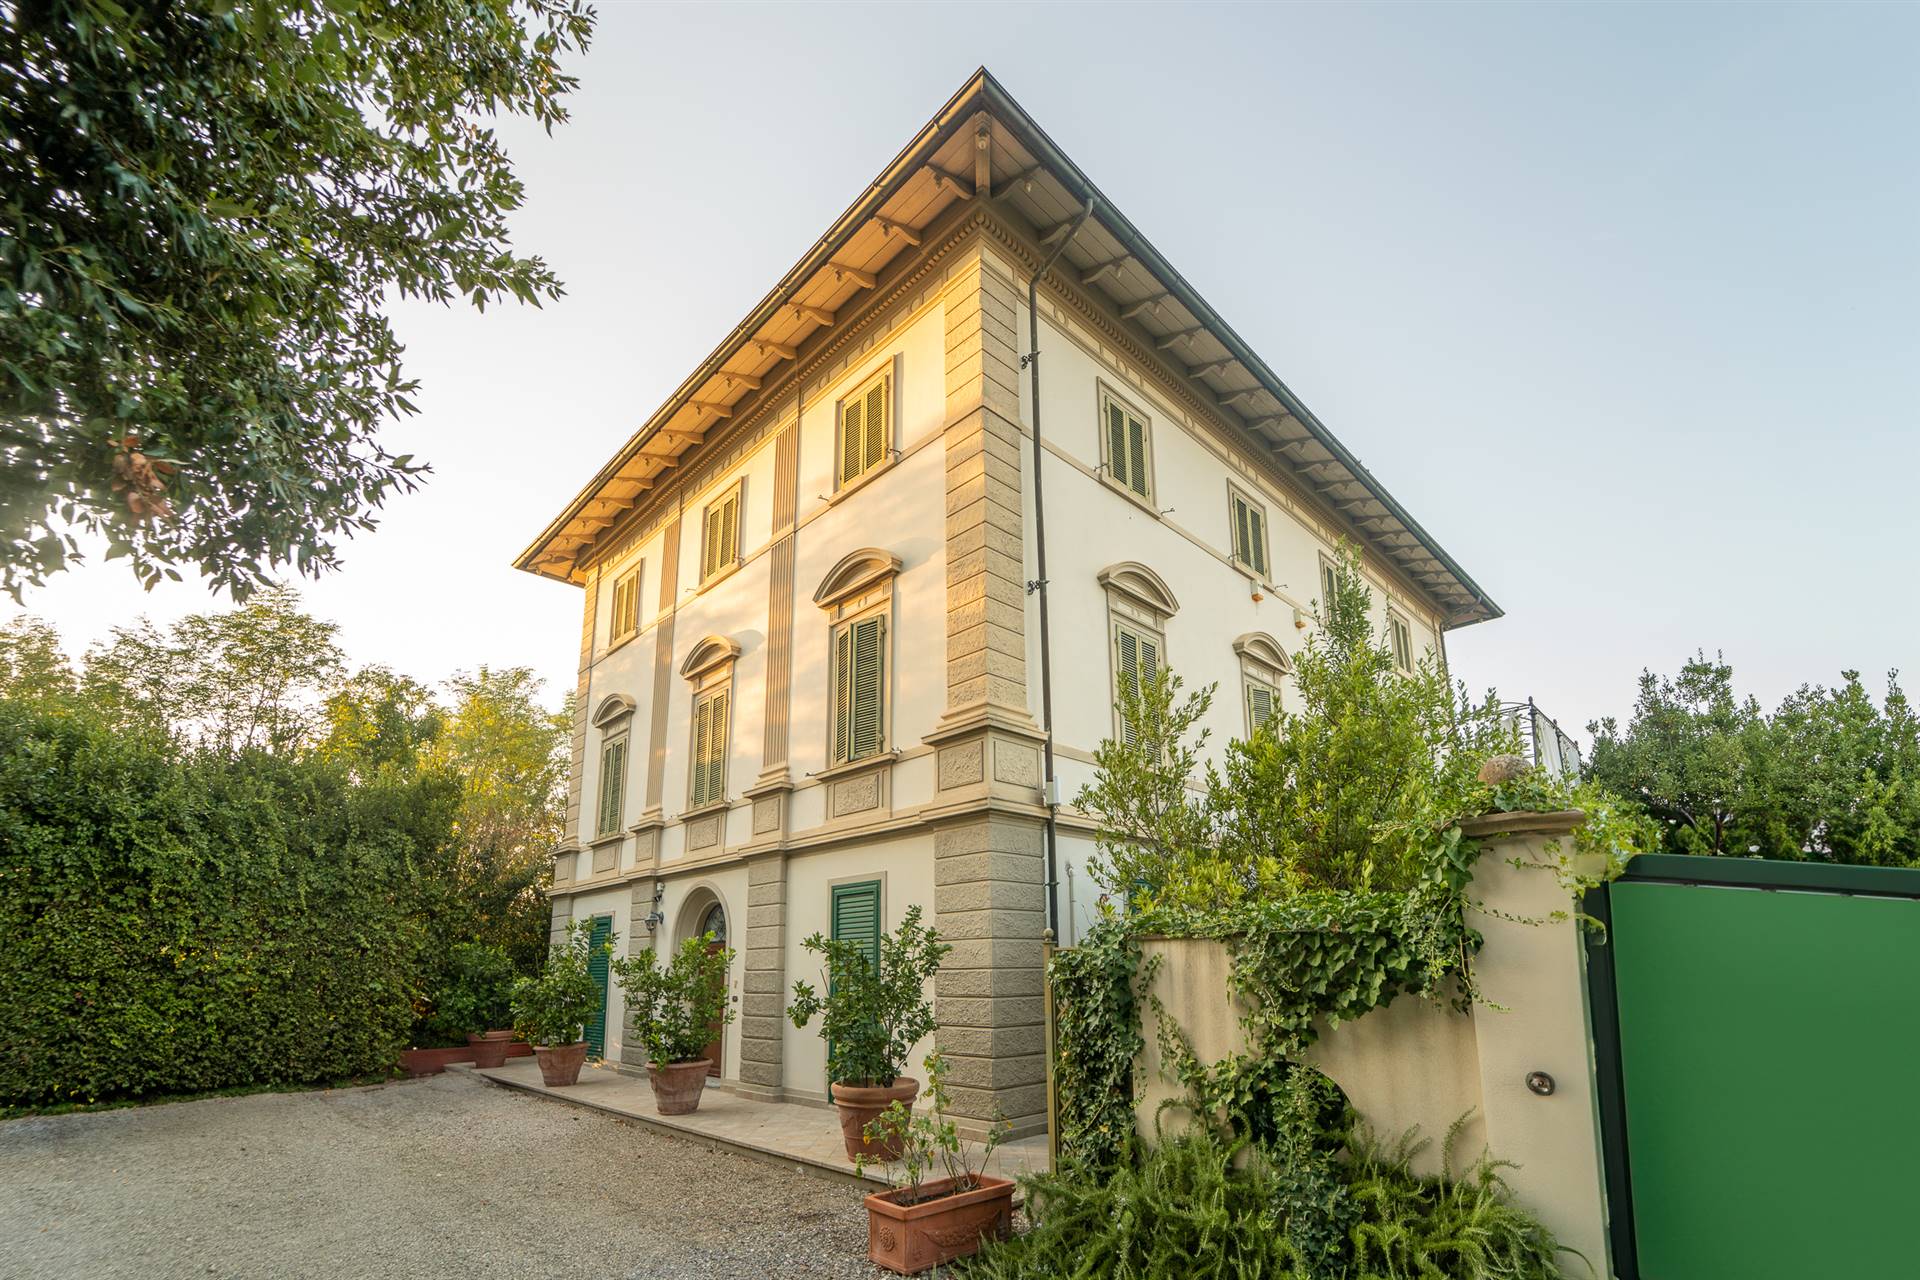 Villa in ottime condizioni a Casciana Terme Lari